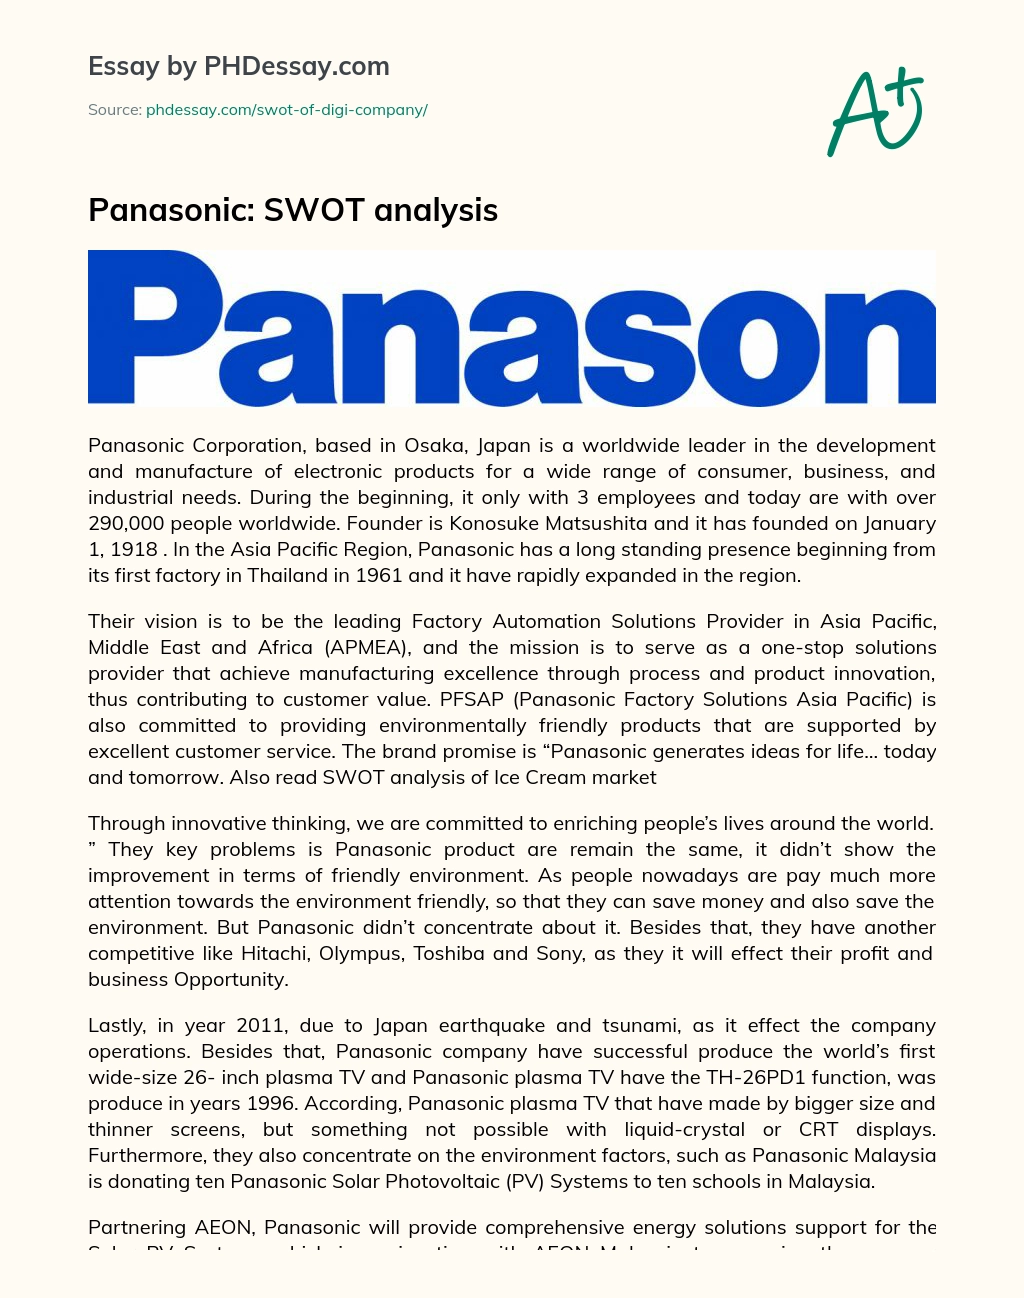 Panasonic: SWOT analysis essay